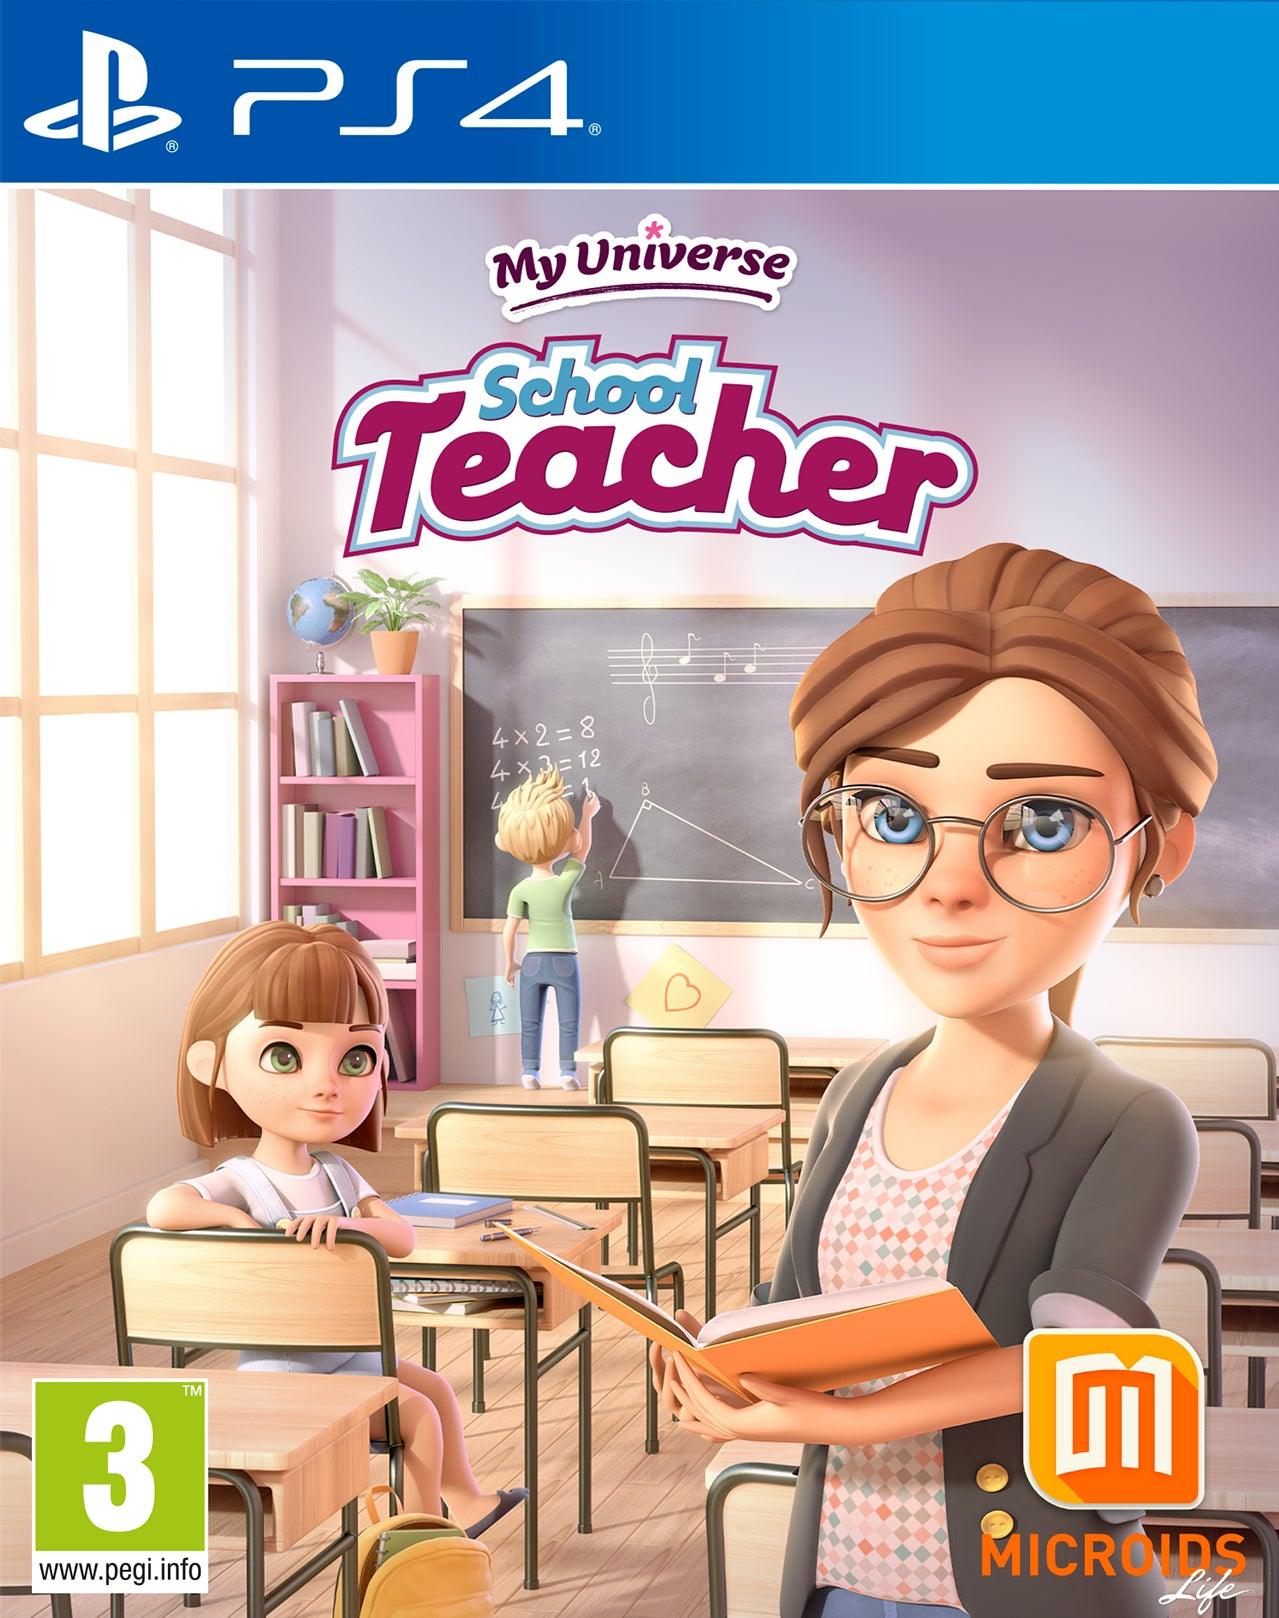 My Universe School Teacher - Want a New Gadget